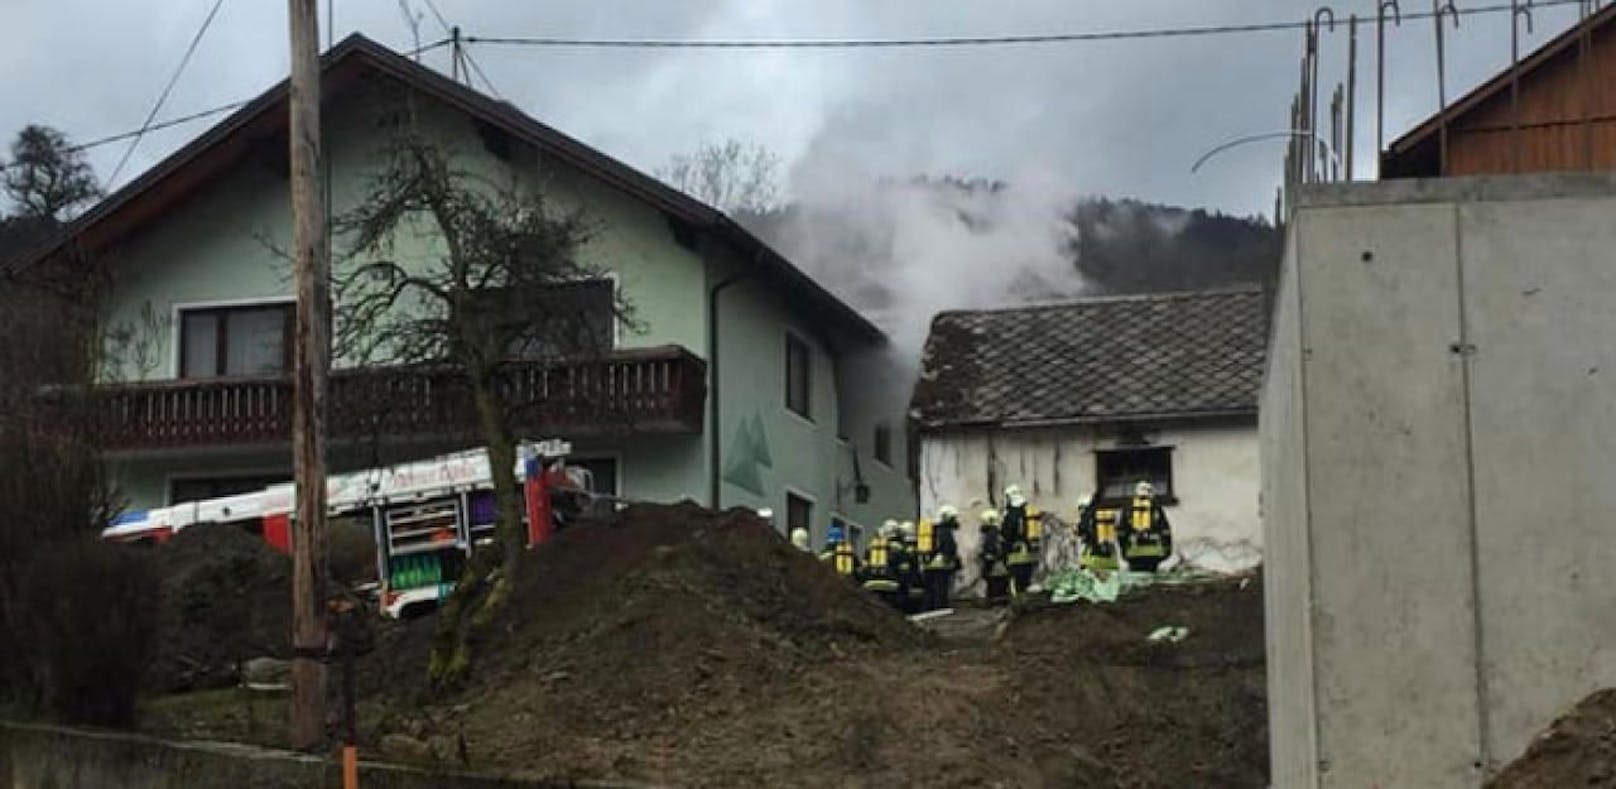 Ein Wohnhausbrand in Pöggstall löste einen Großeinsatz am Sonntag aus.